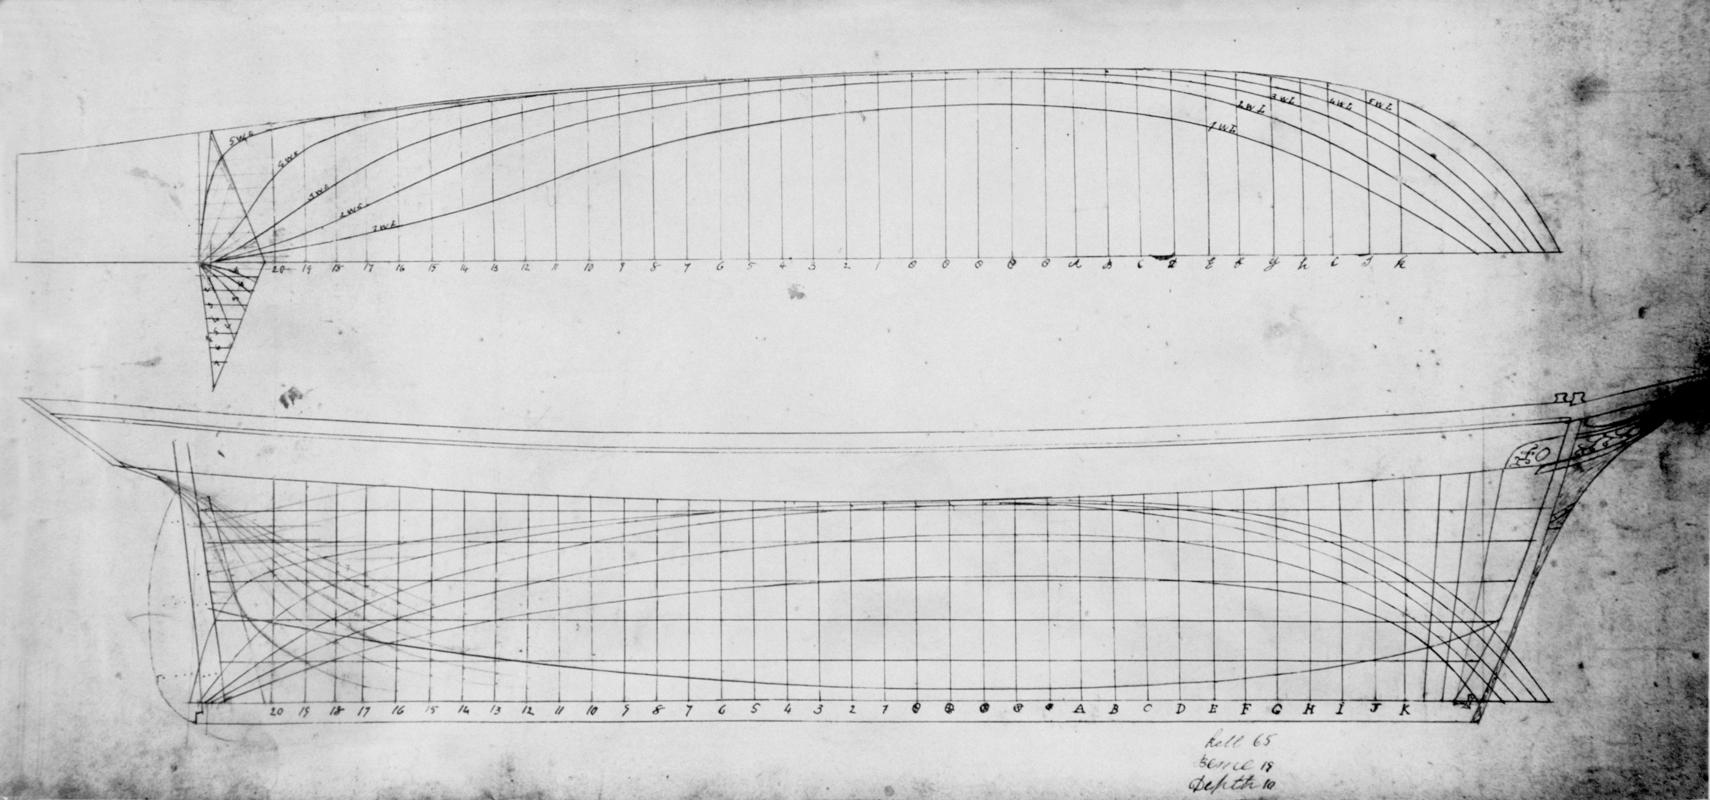 Tech . Drawing : lines of schooner EDITH ELEANOR (model)